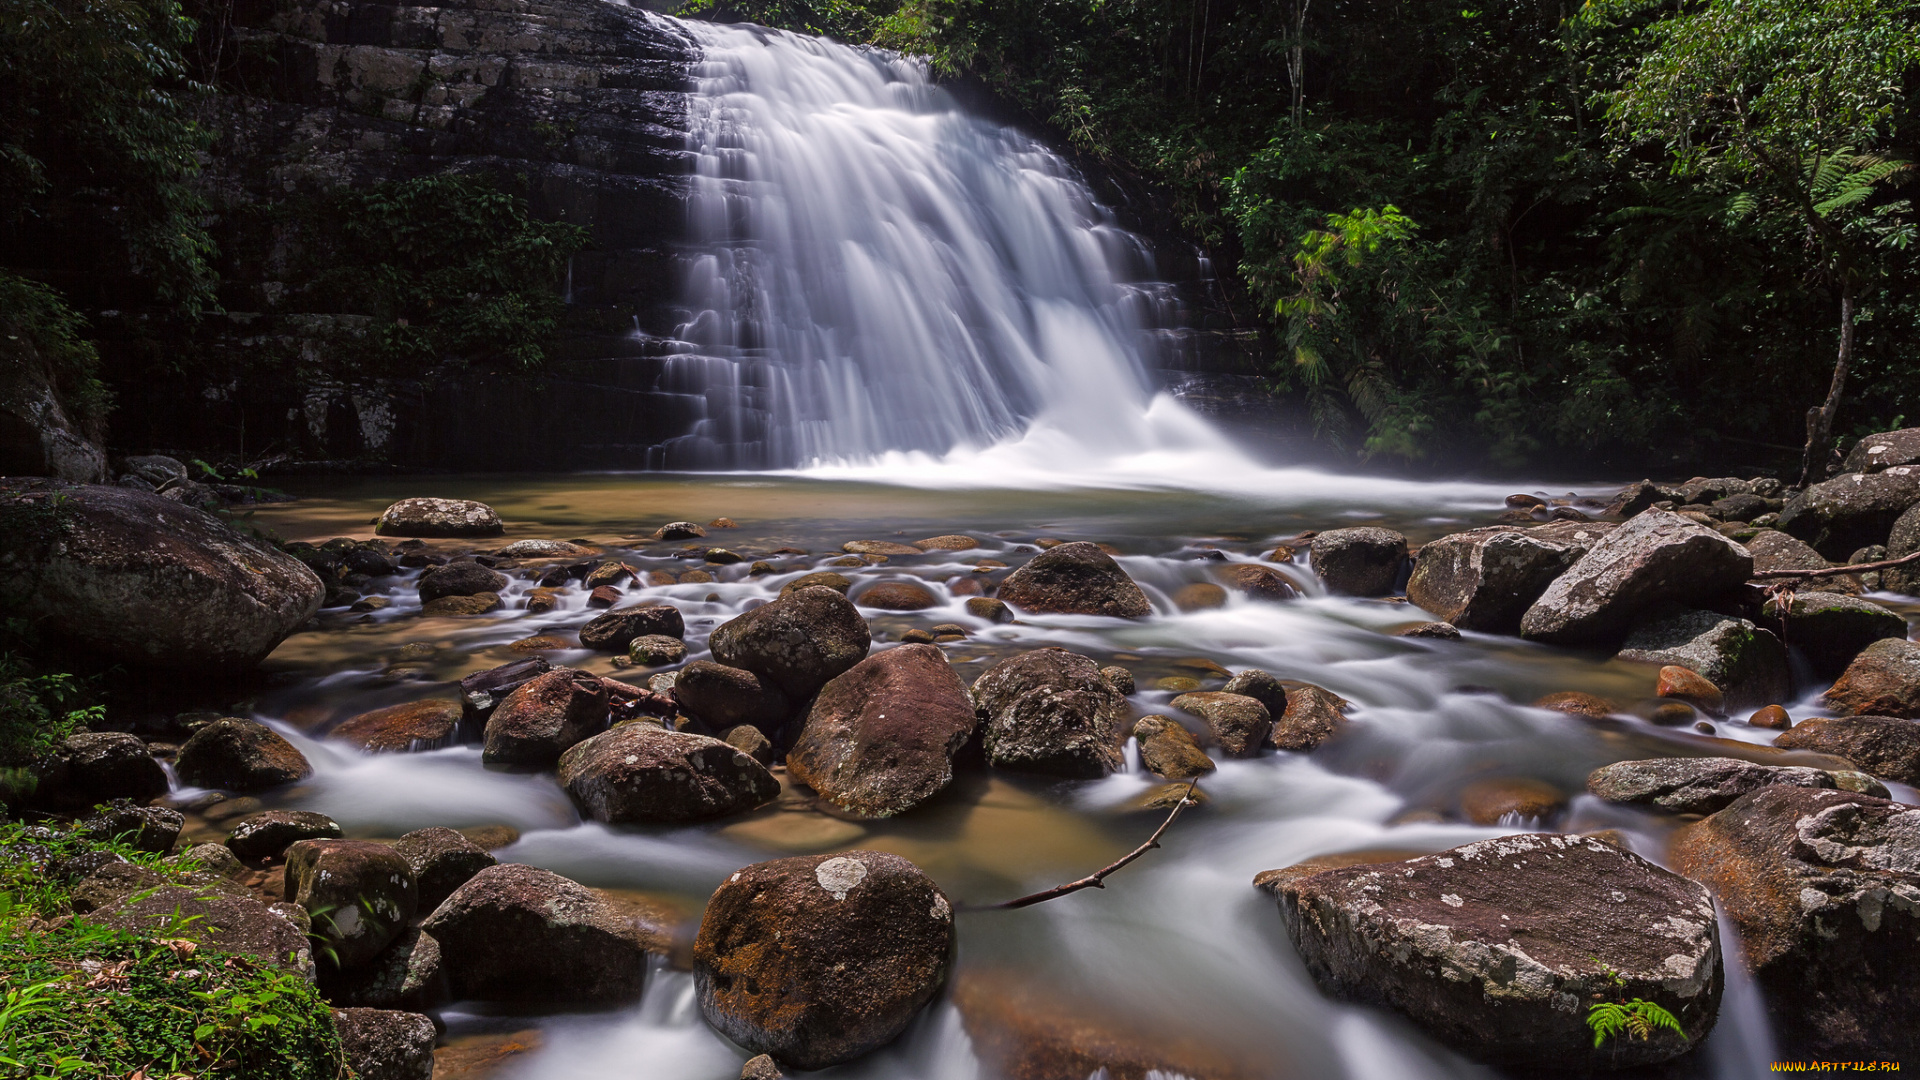 lata, bukit, hijau, waterfall, kedah, malaysia, природа, водопады, малайзия, камни, река